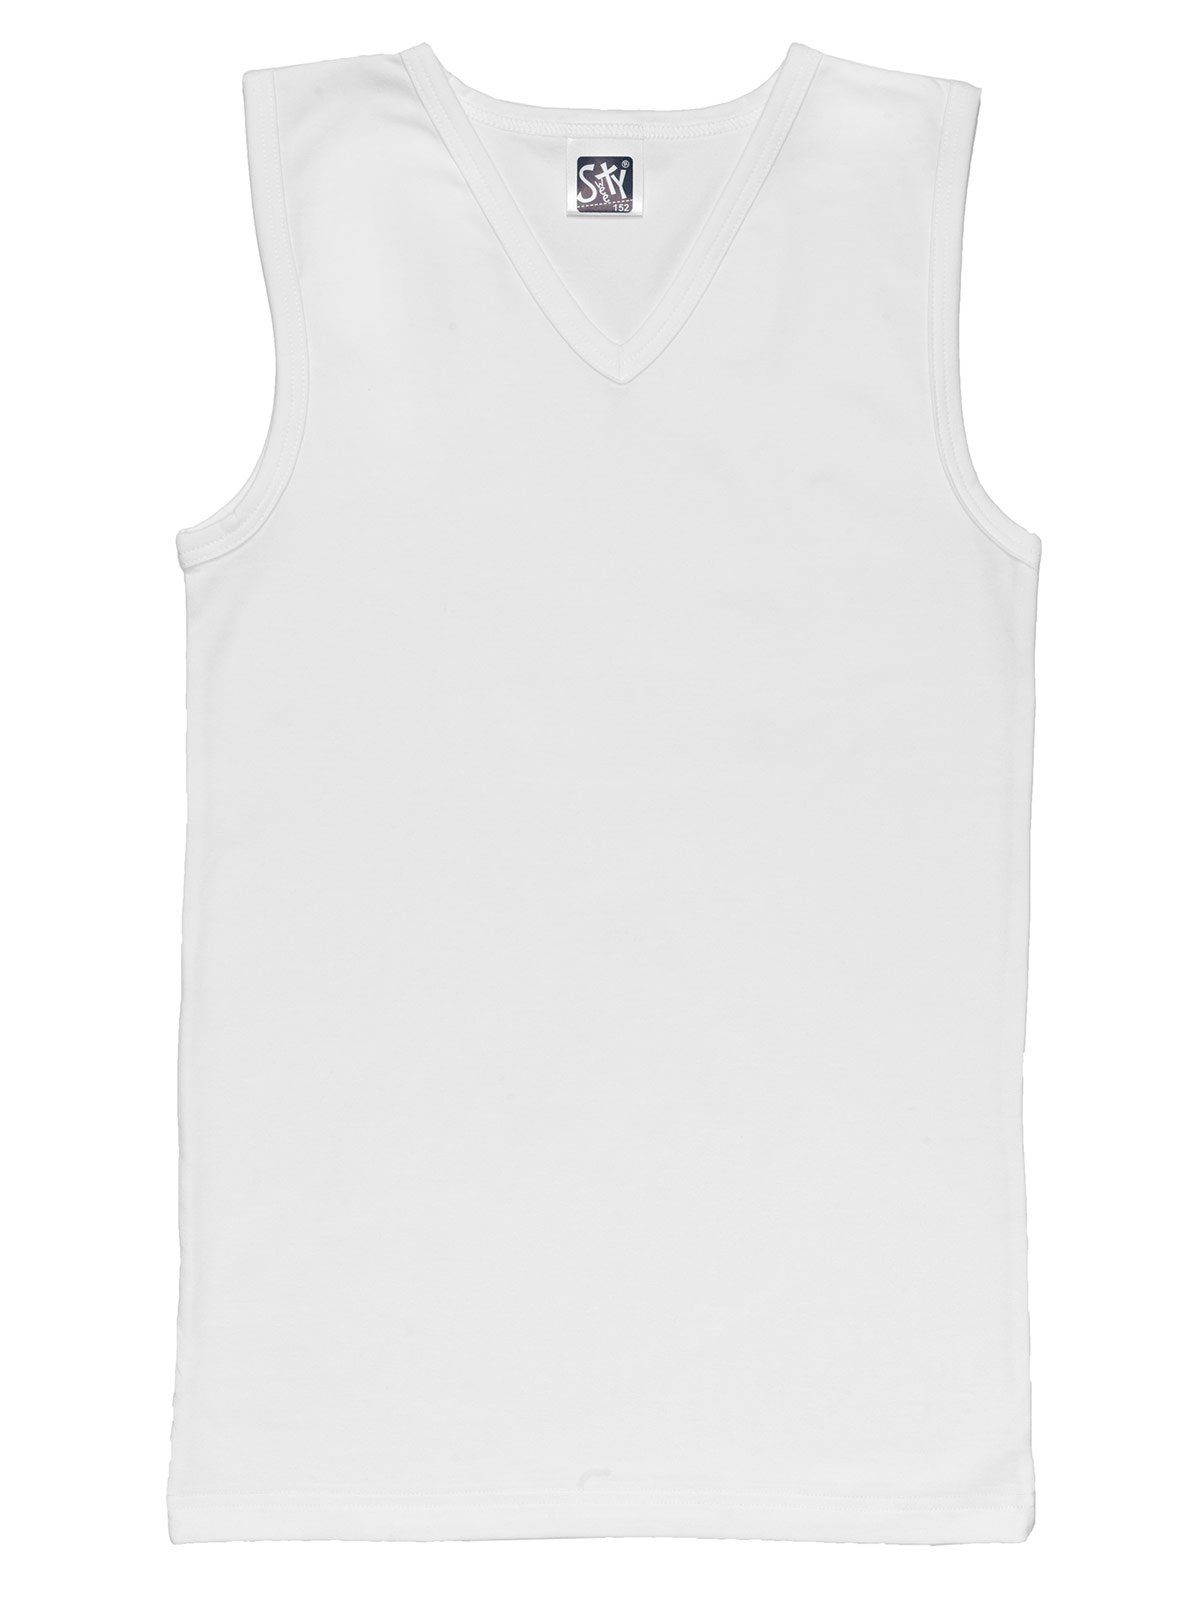 Sweety for hohe Kids Shirt 6-St) weiss Single Knaben Unterhemd Jersey Markenqualität navy City Sparpack (Spar-Set, 6er